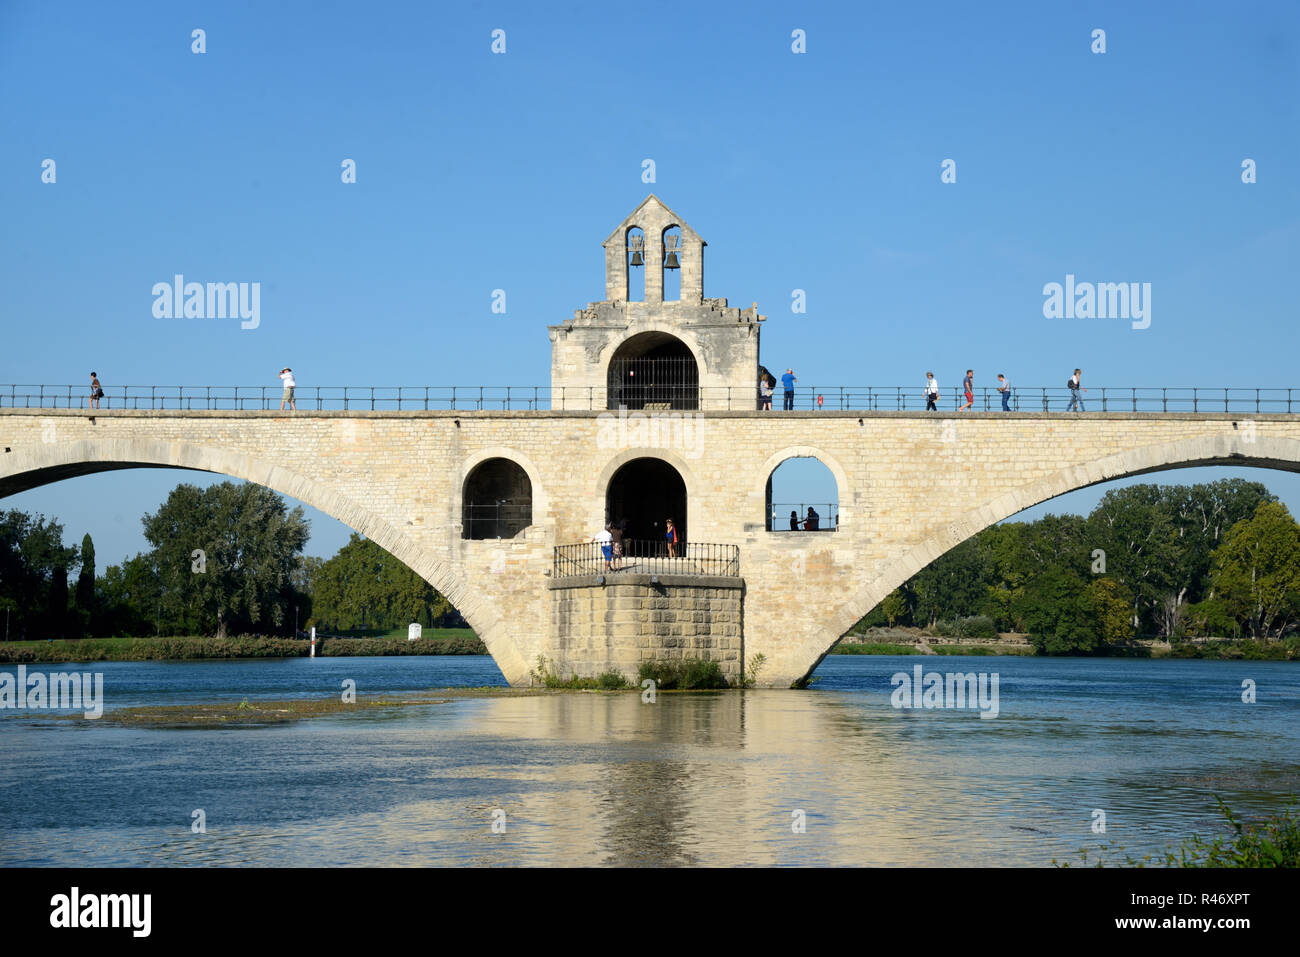 Pont d'Avignon ou pont Saint-Bénézet pont médiéval sur le Rhône à Avignon Provence France. Chapelle de Saint Nicholas, au centre. Banque D'Images